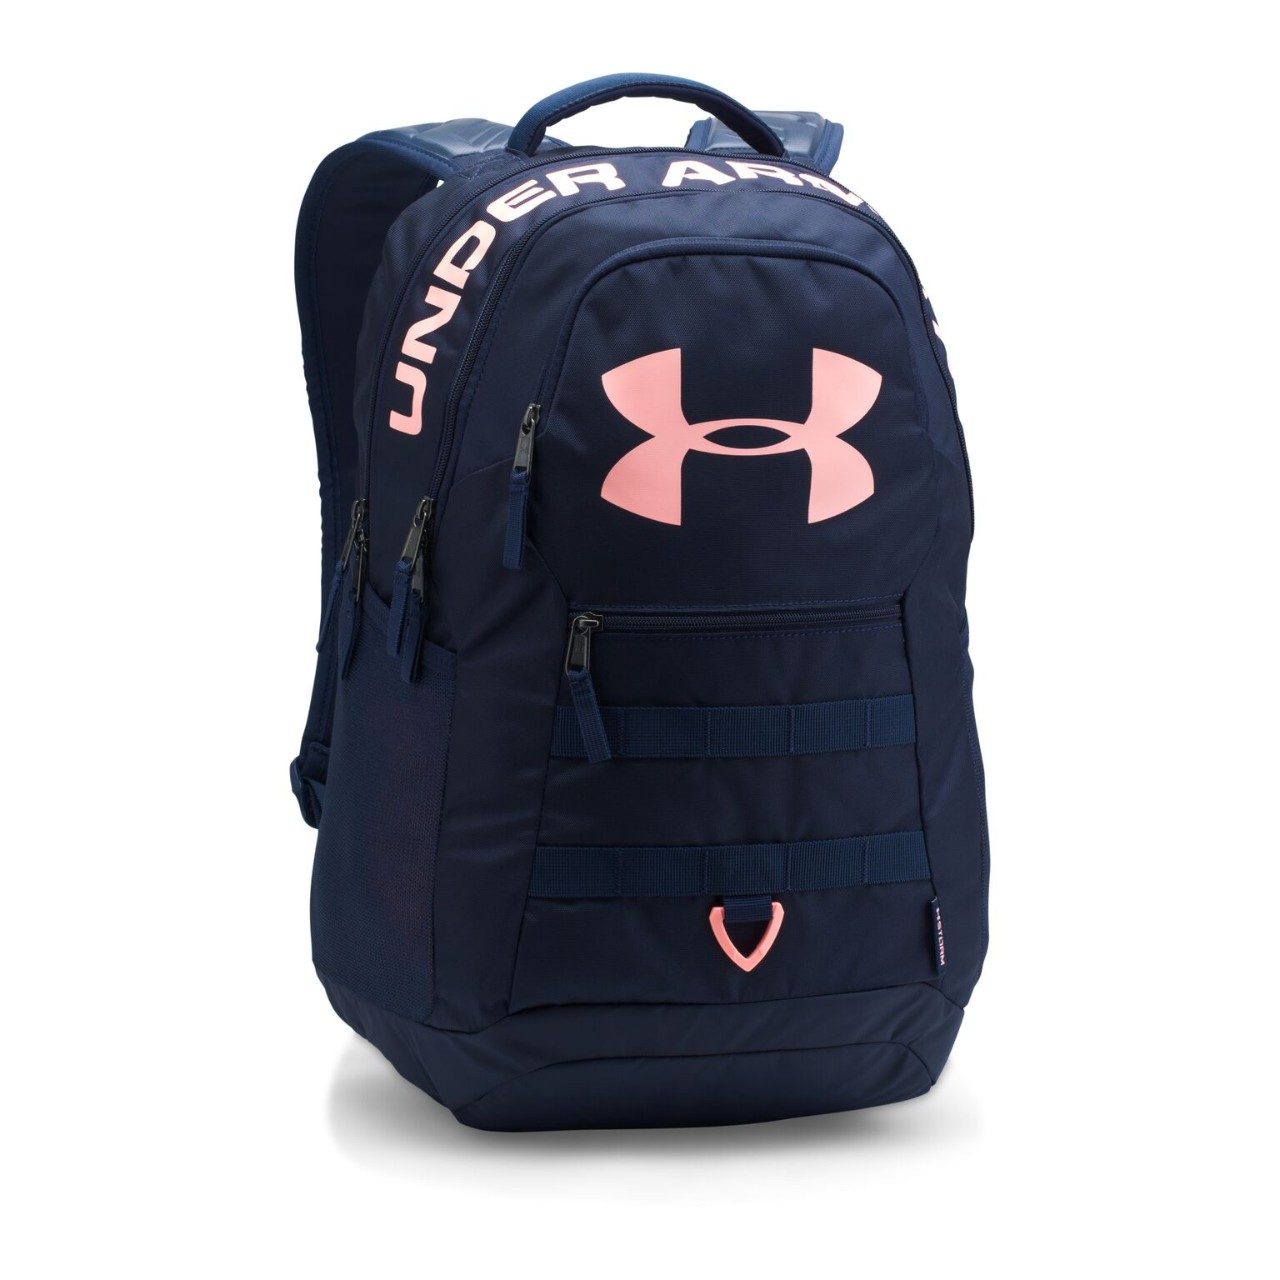 UA Big Logo Backpack, $69.99